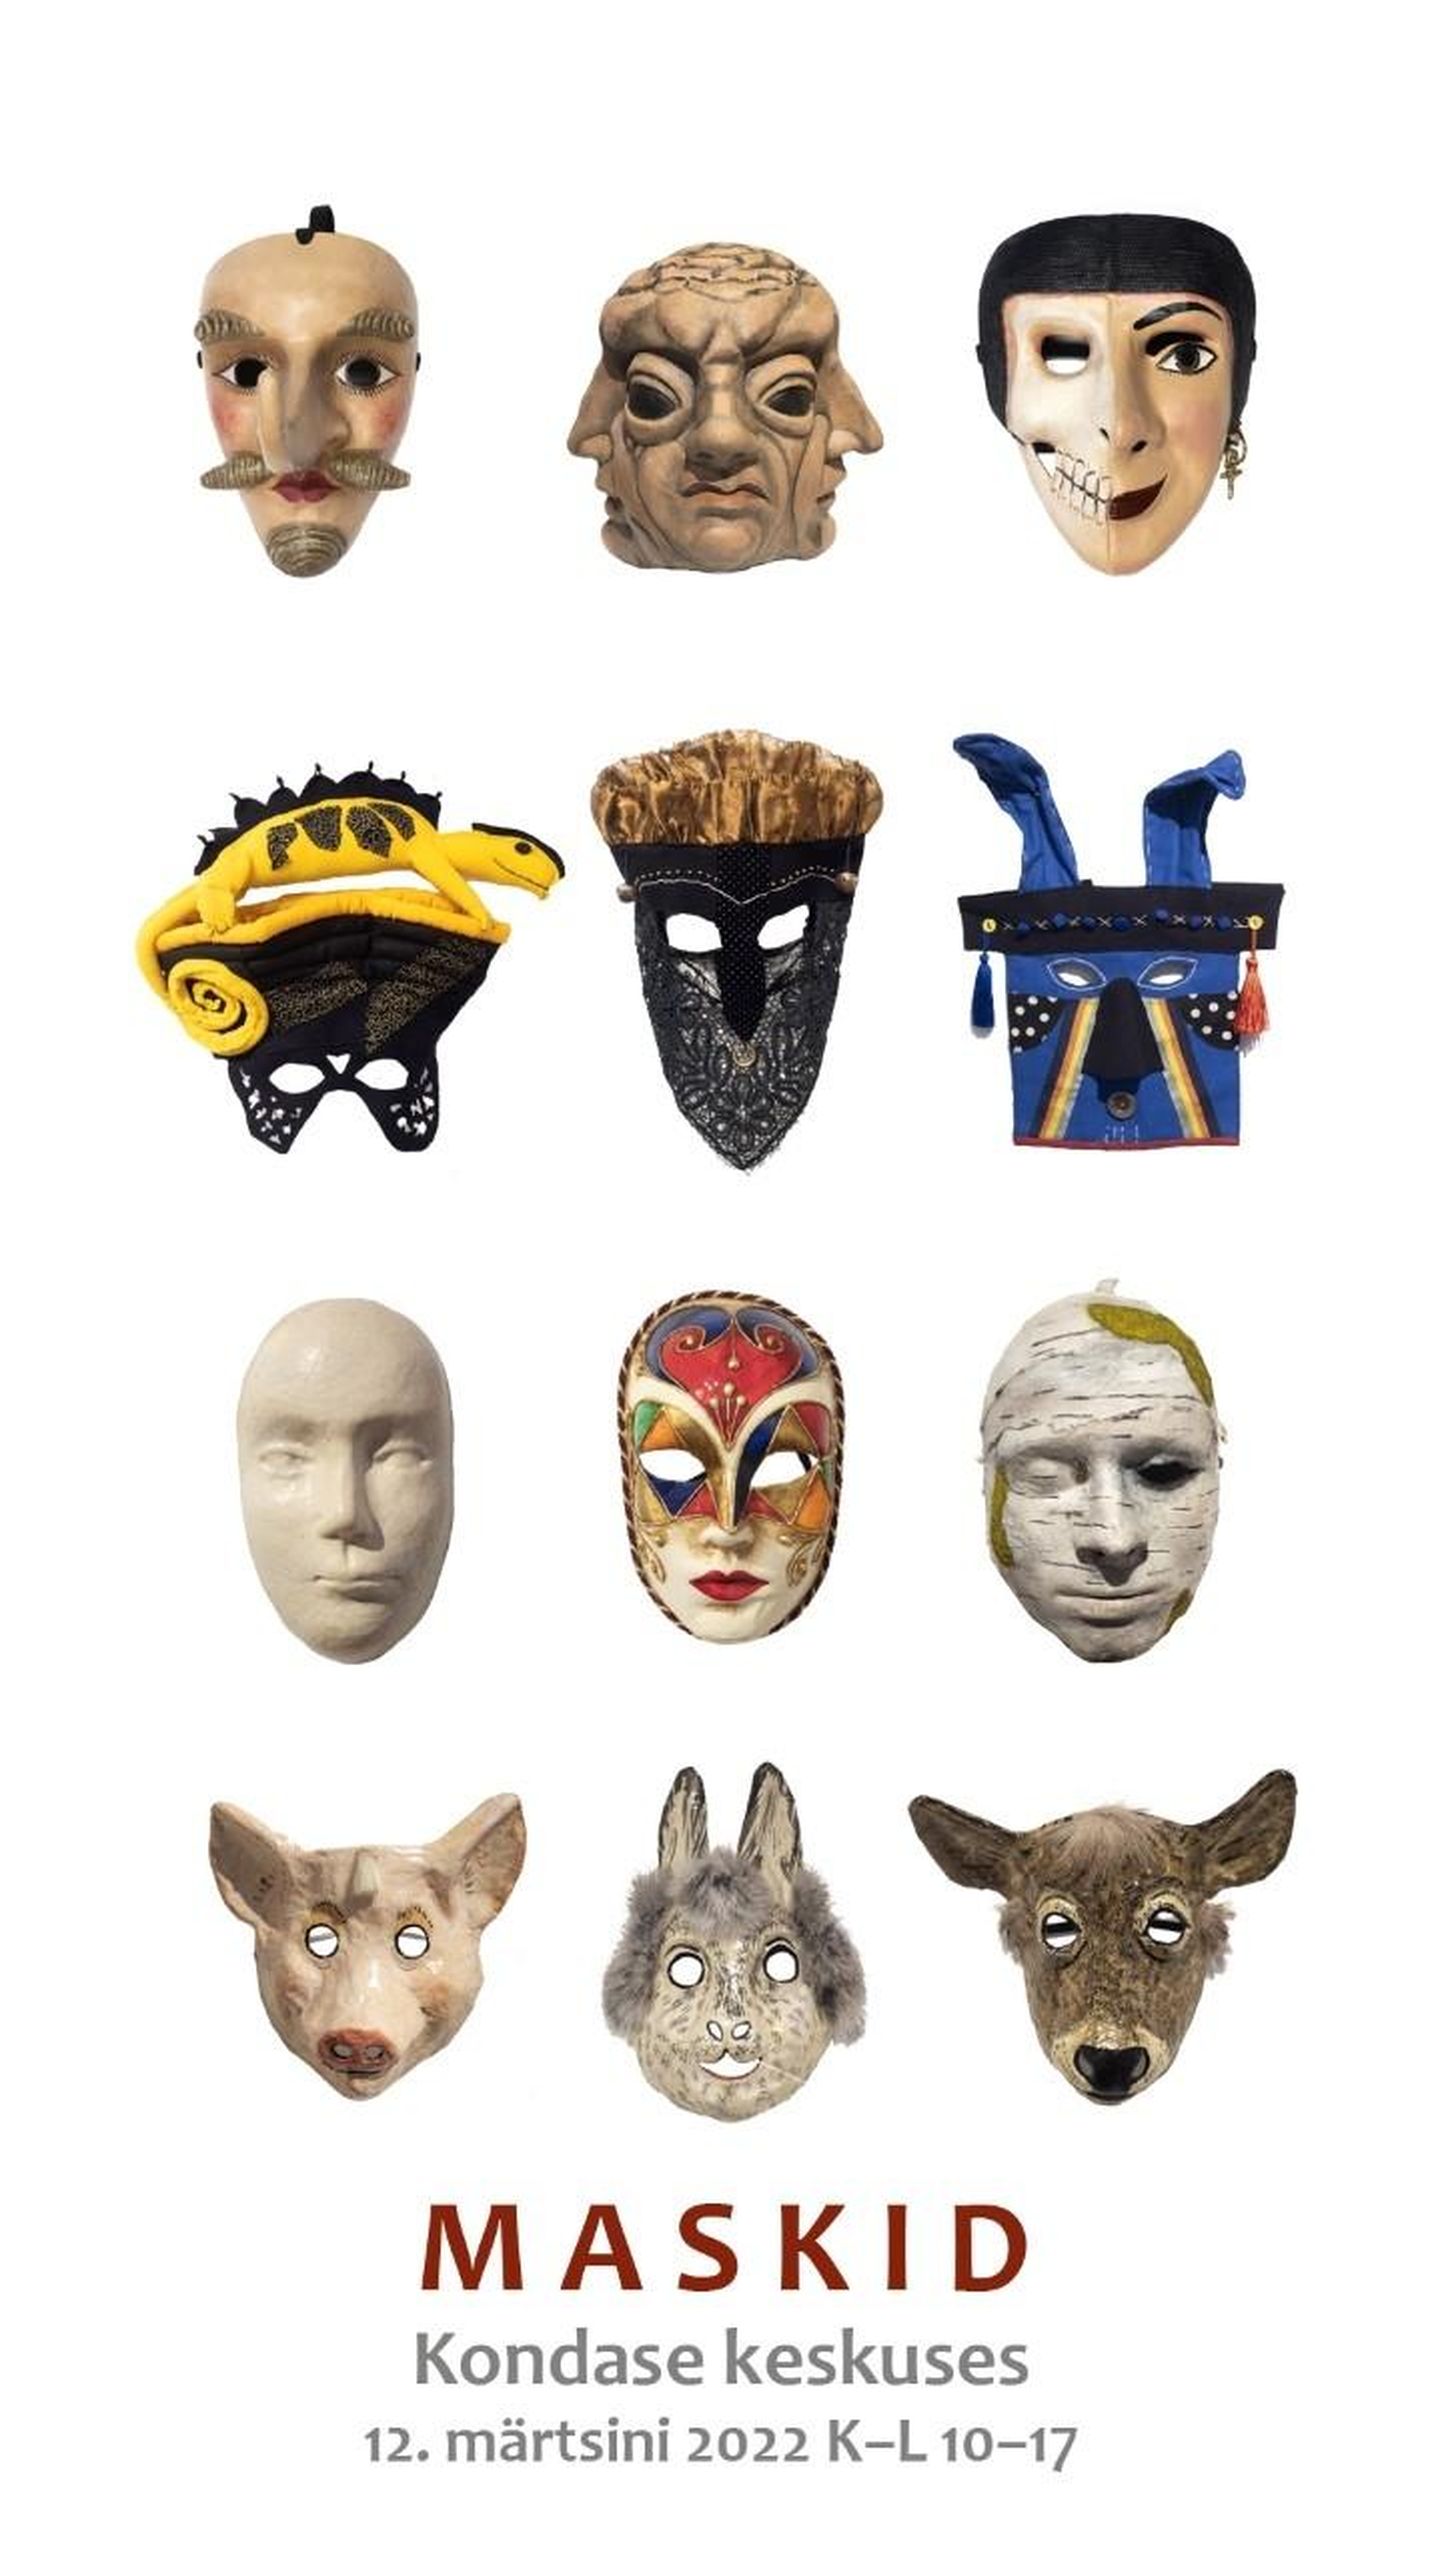 Kondase keskus näitab mitmesuguseid maske.